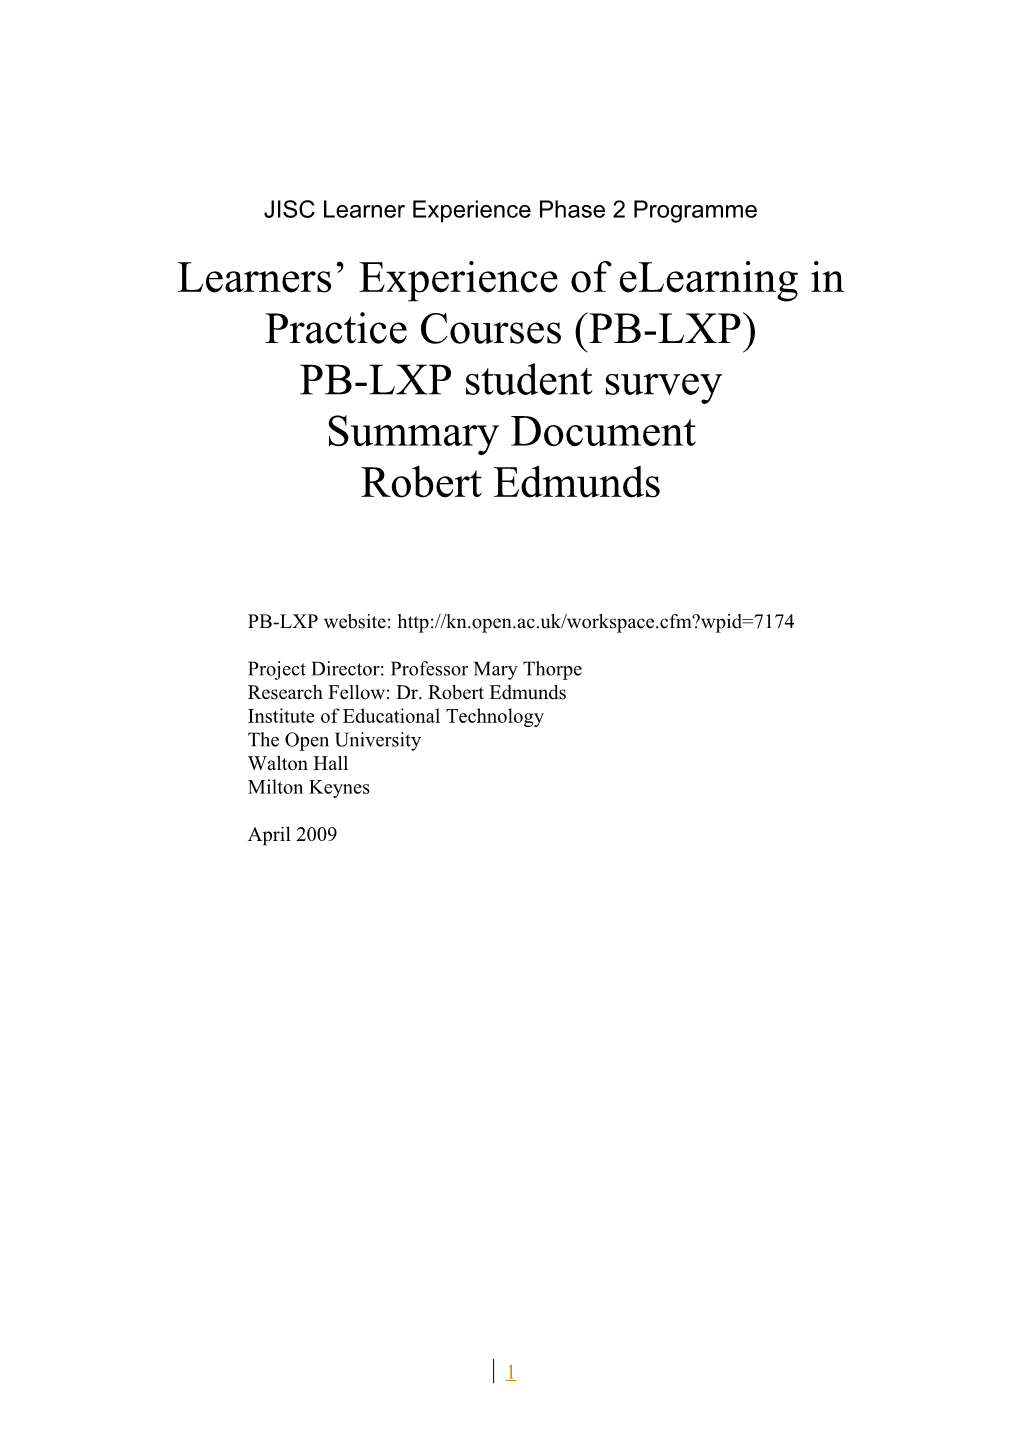 PB-LXP Student Survey